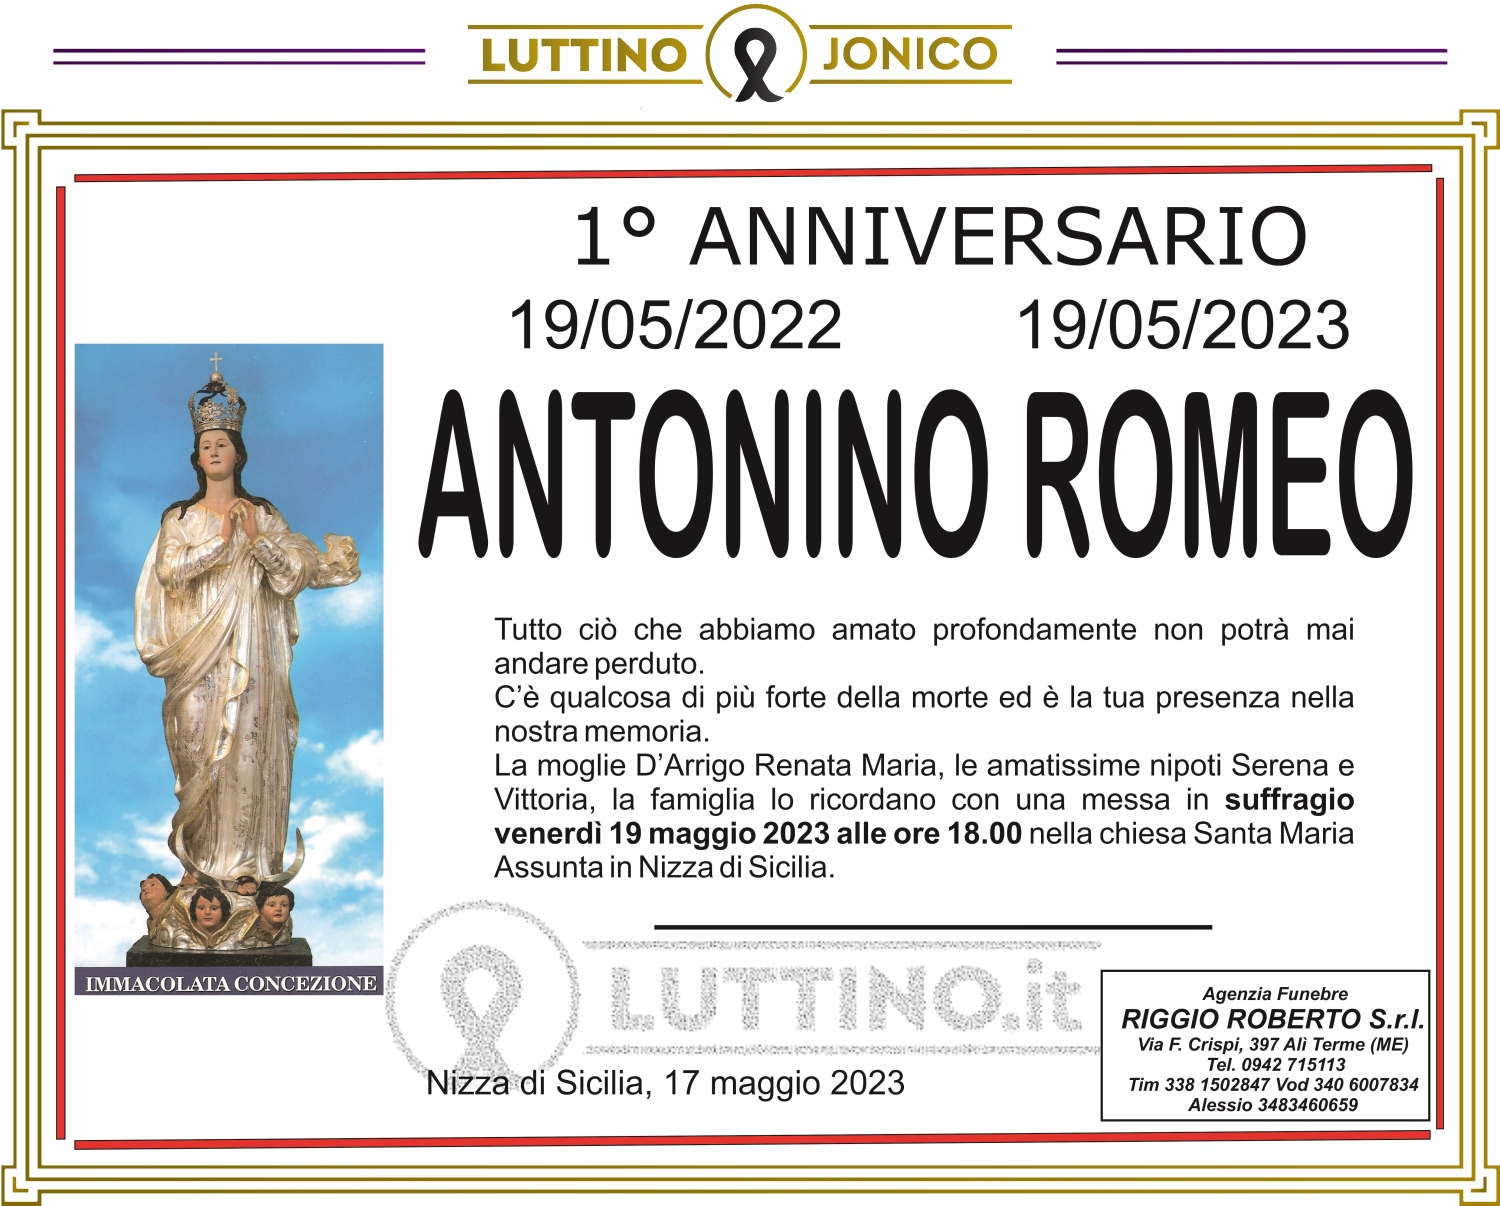 Antonino Romeo